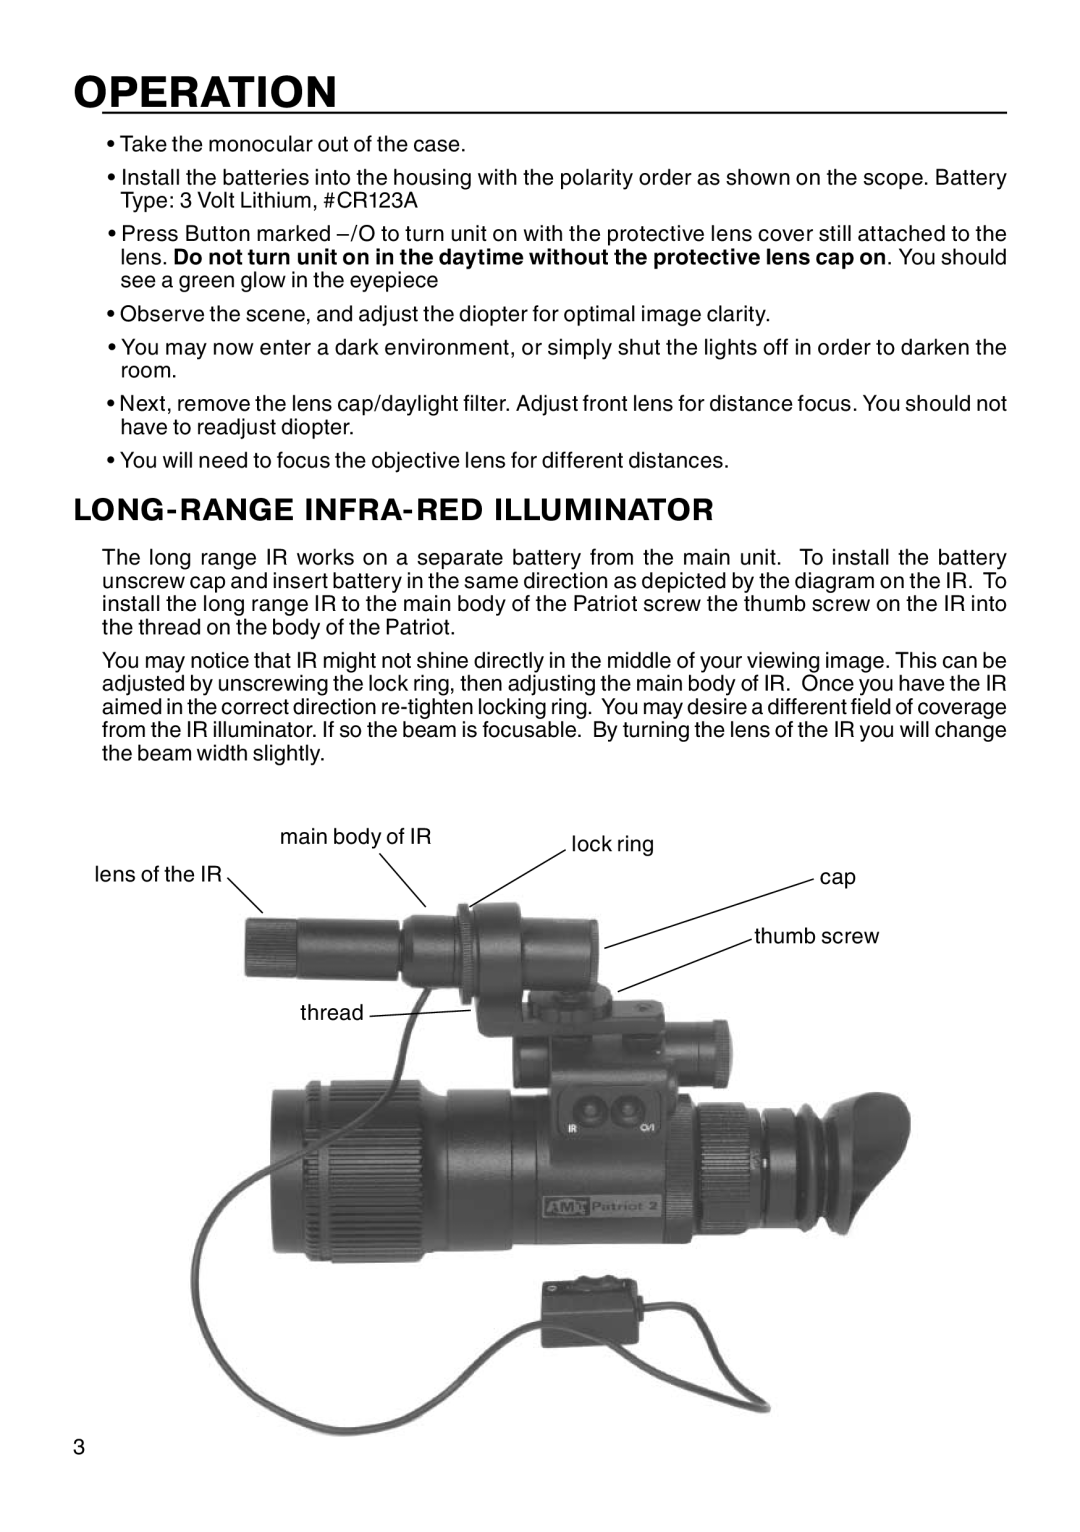 ATN Night Patriot manual Operation, Long-Range Infra-Redilluminator 